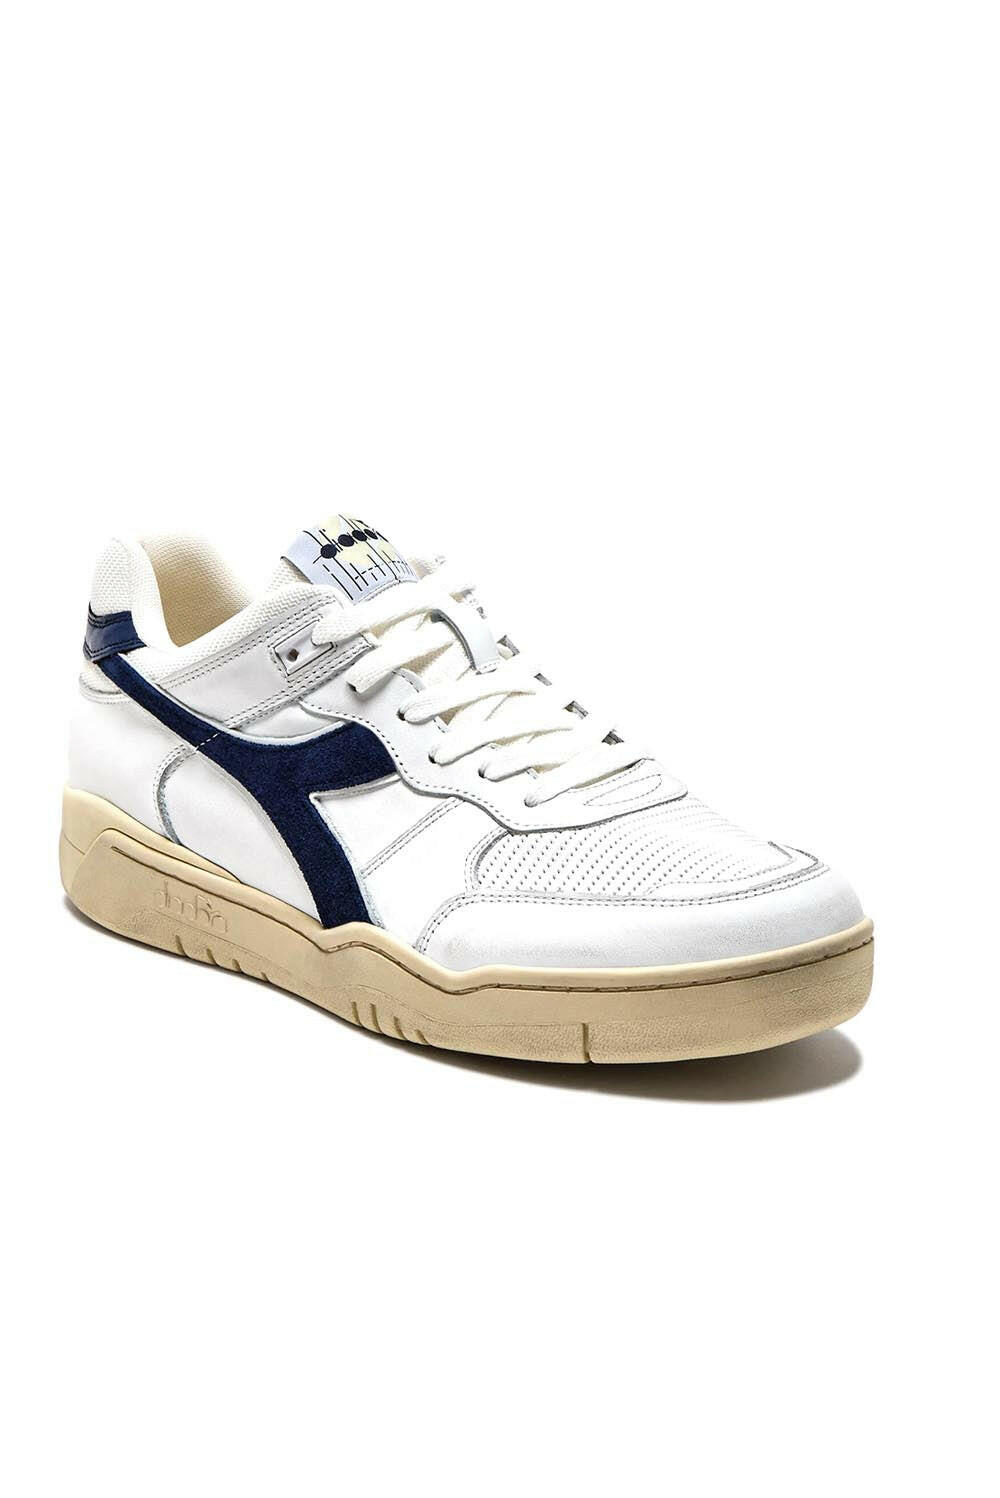  Diadora Sneaker B.560 Used Bianco Blu Woman - 2